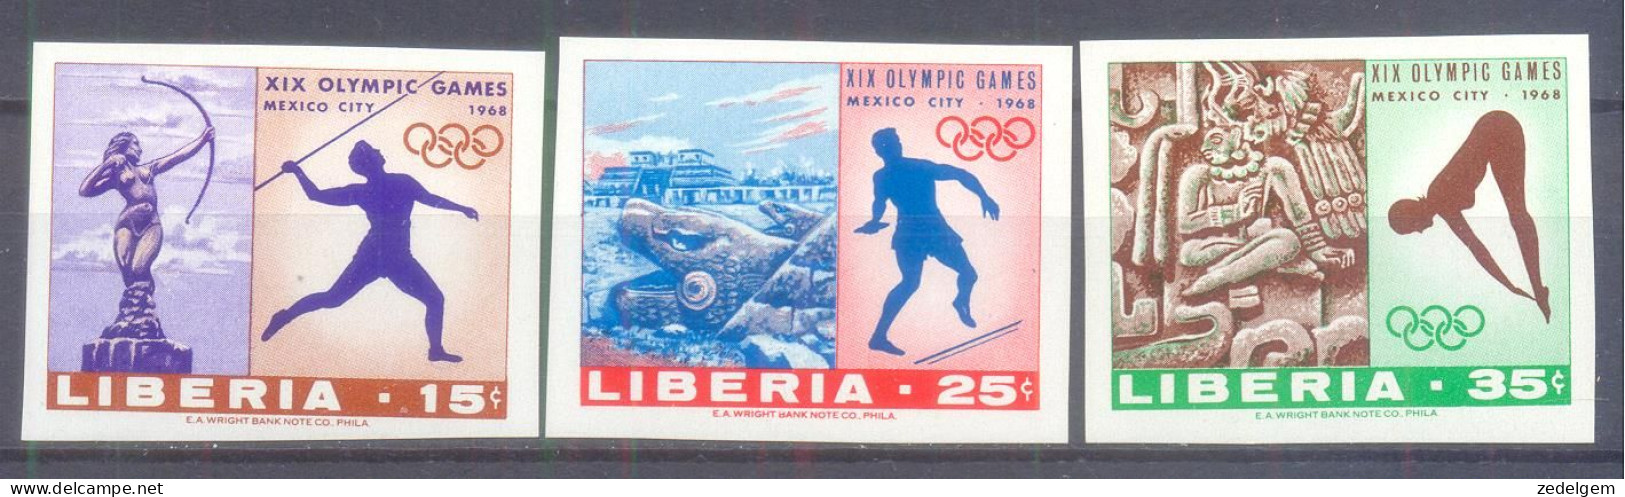 LIBERIA   (OLS128) XC - Zomer 1968: Mexico-City